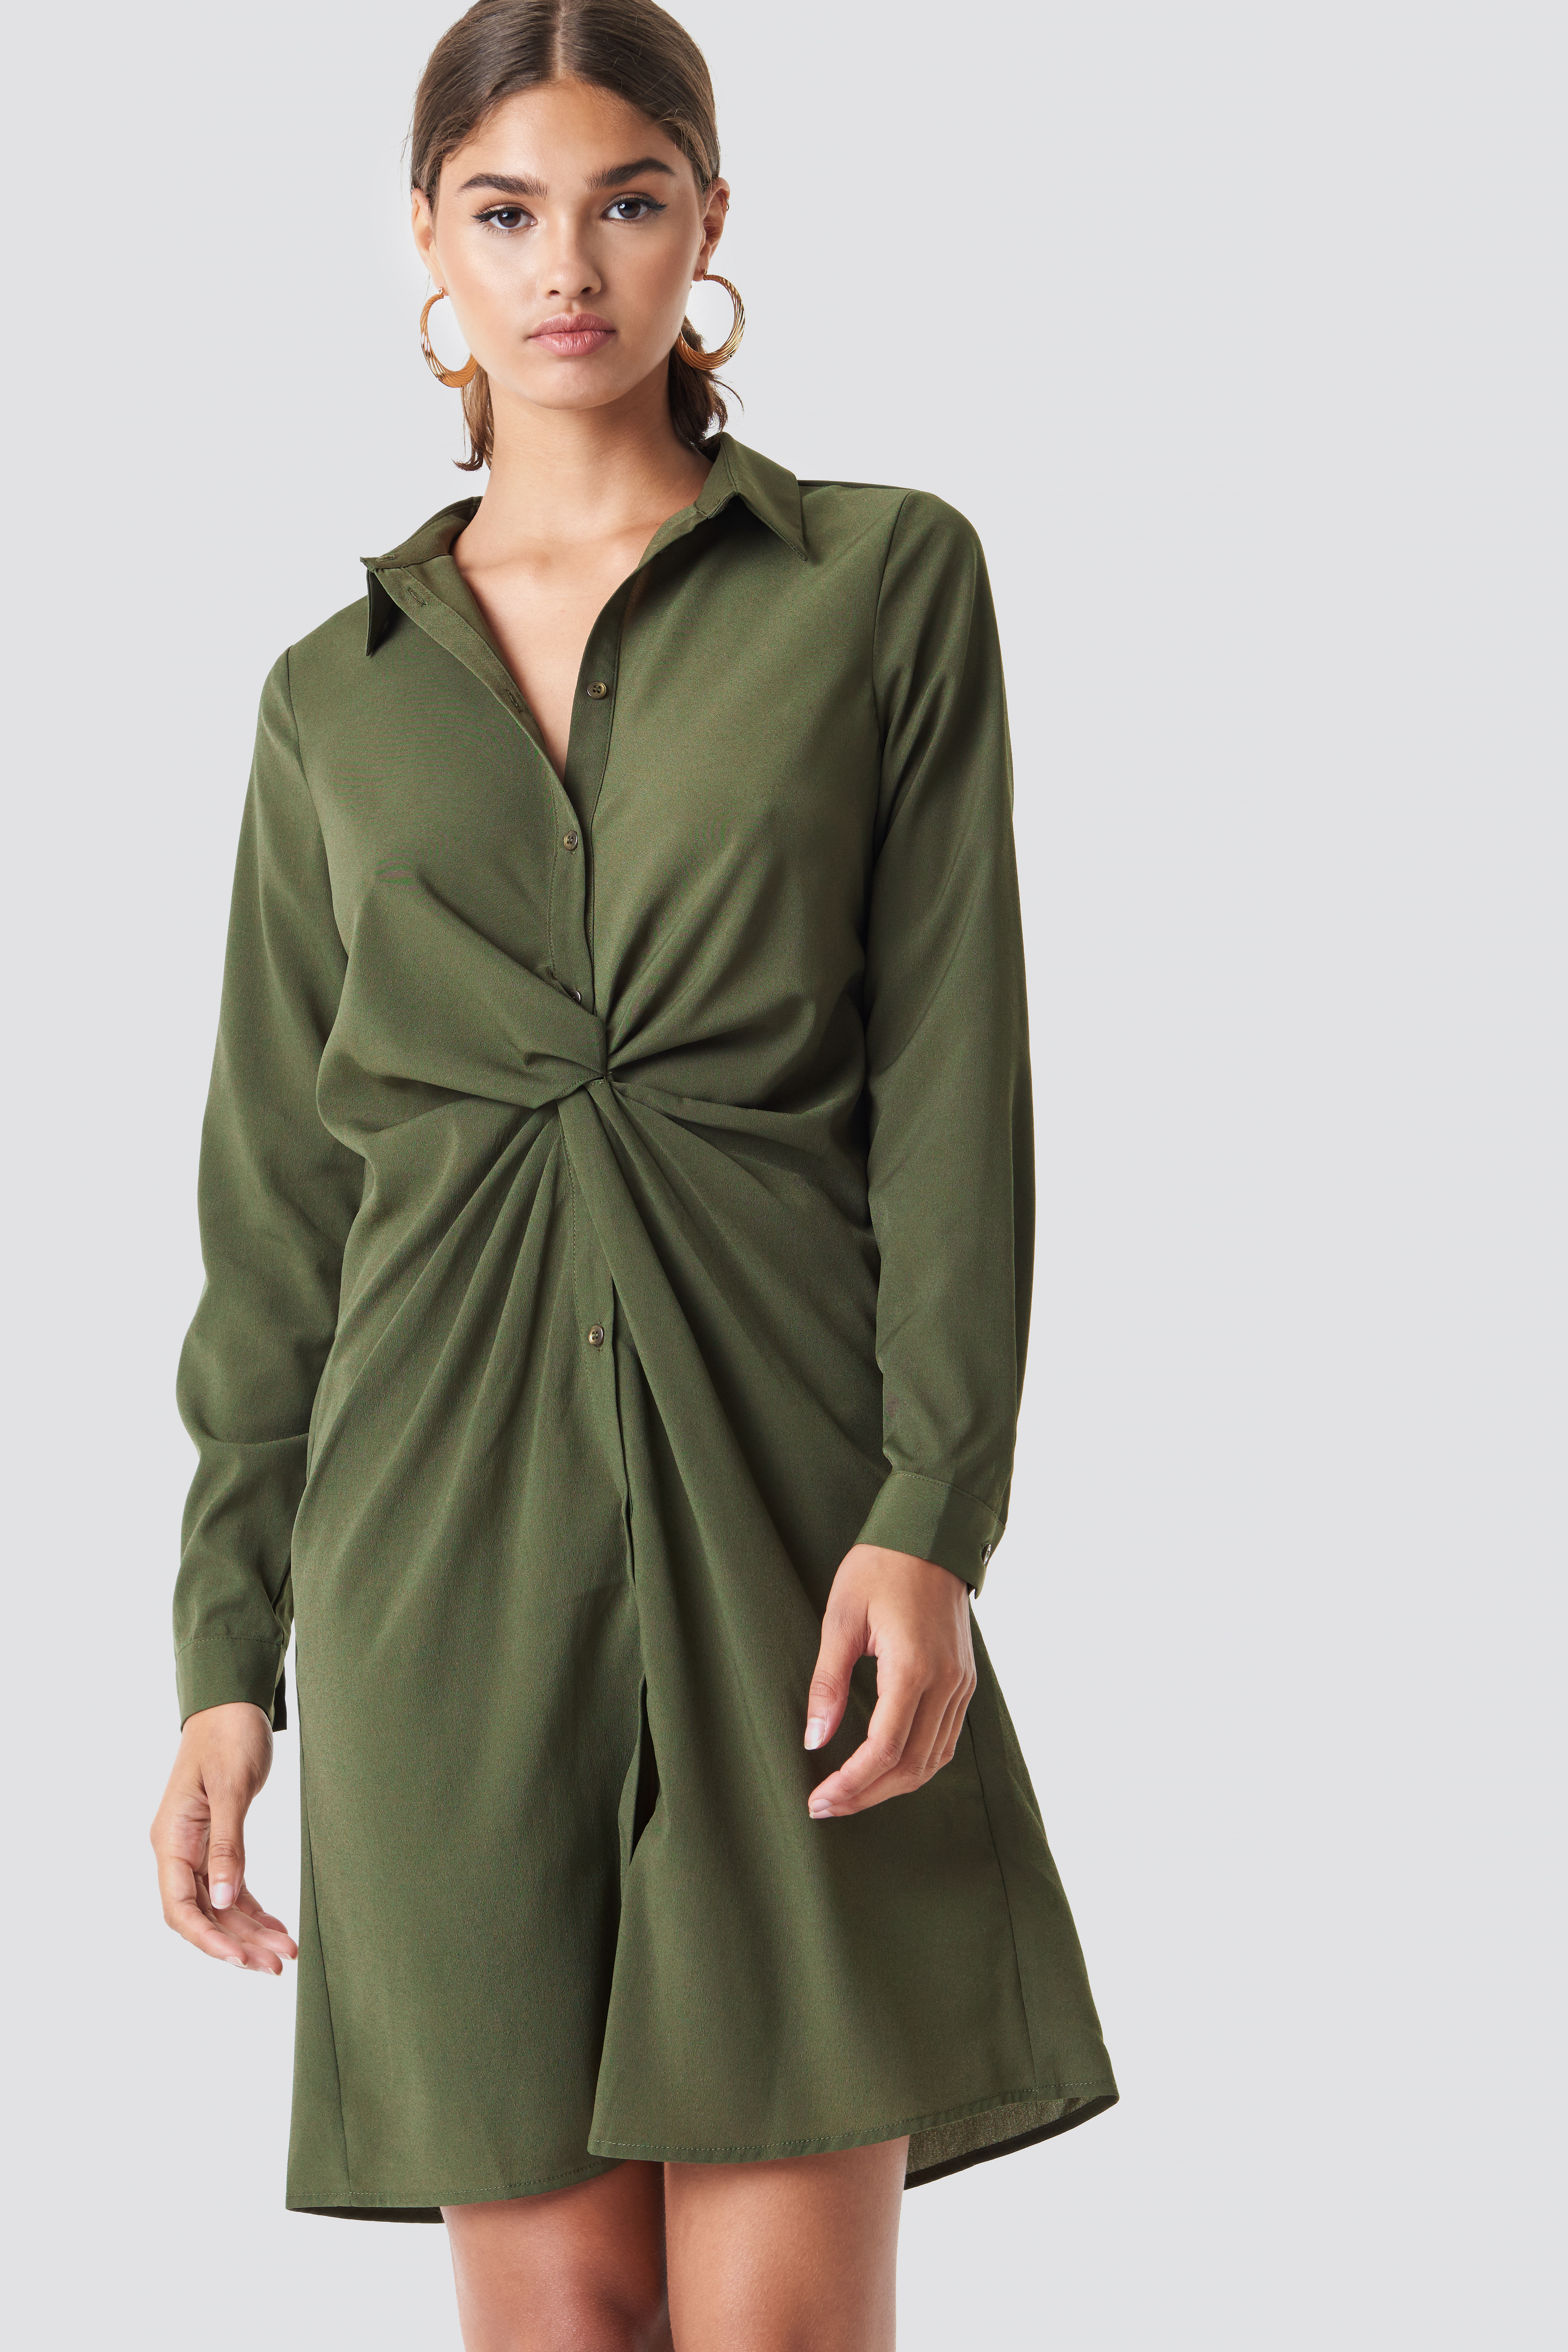 Twist Detail Shirt Dress Khaki Green | na-kd.com - 3796 x 5694 jpeg 2506kB